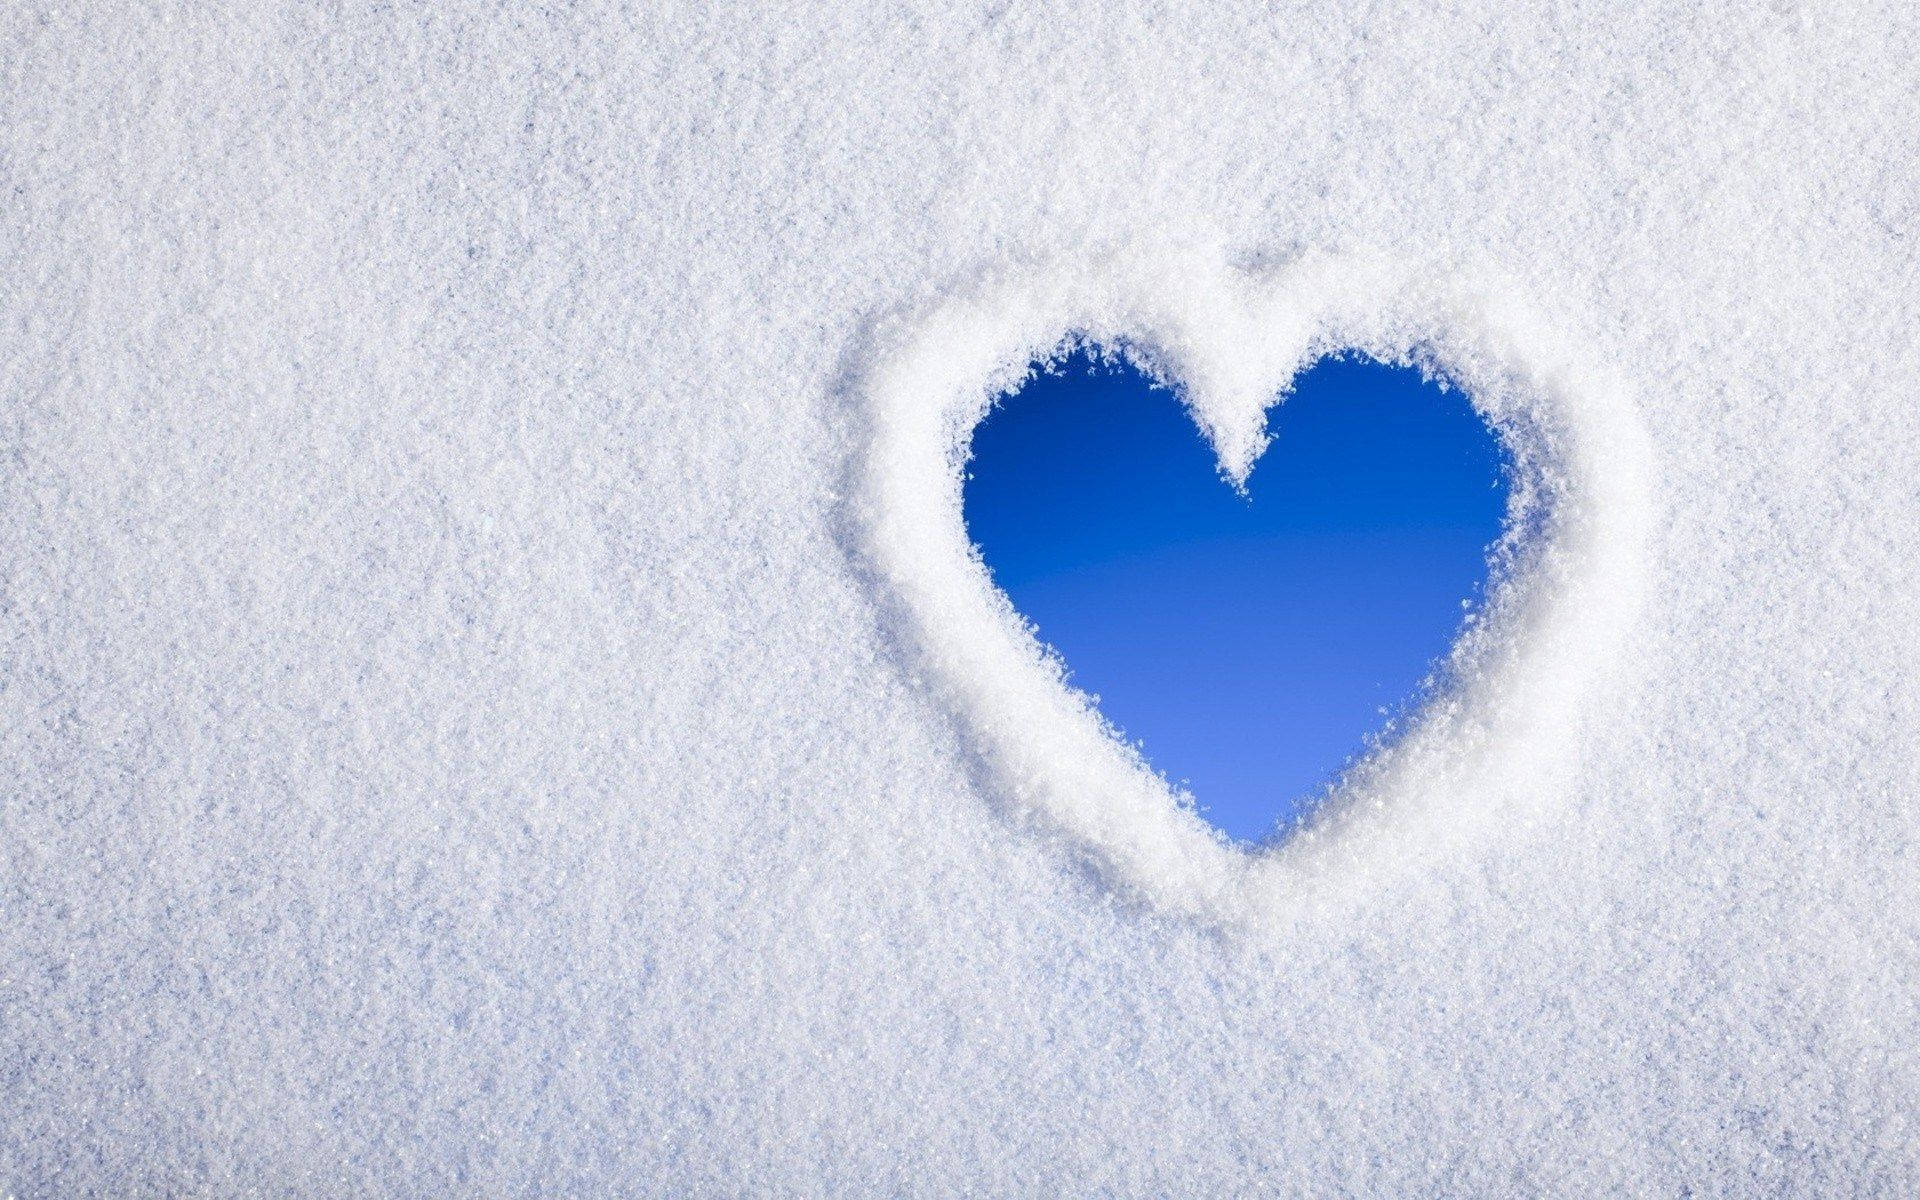 Blue Heart In White Snow Wallpaper